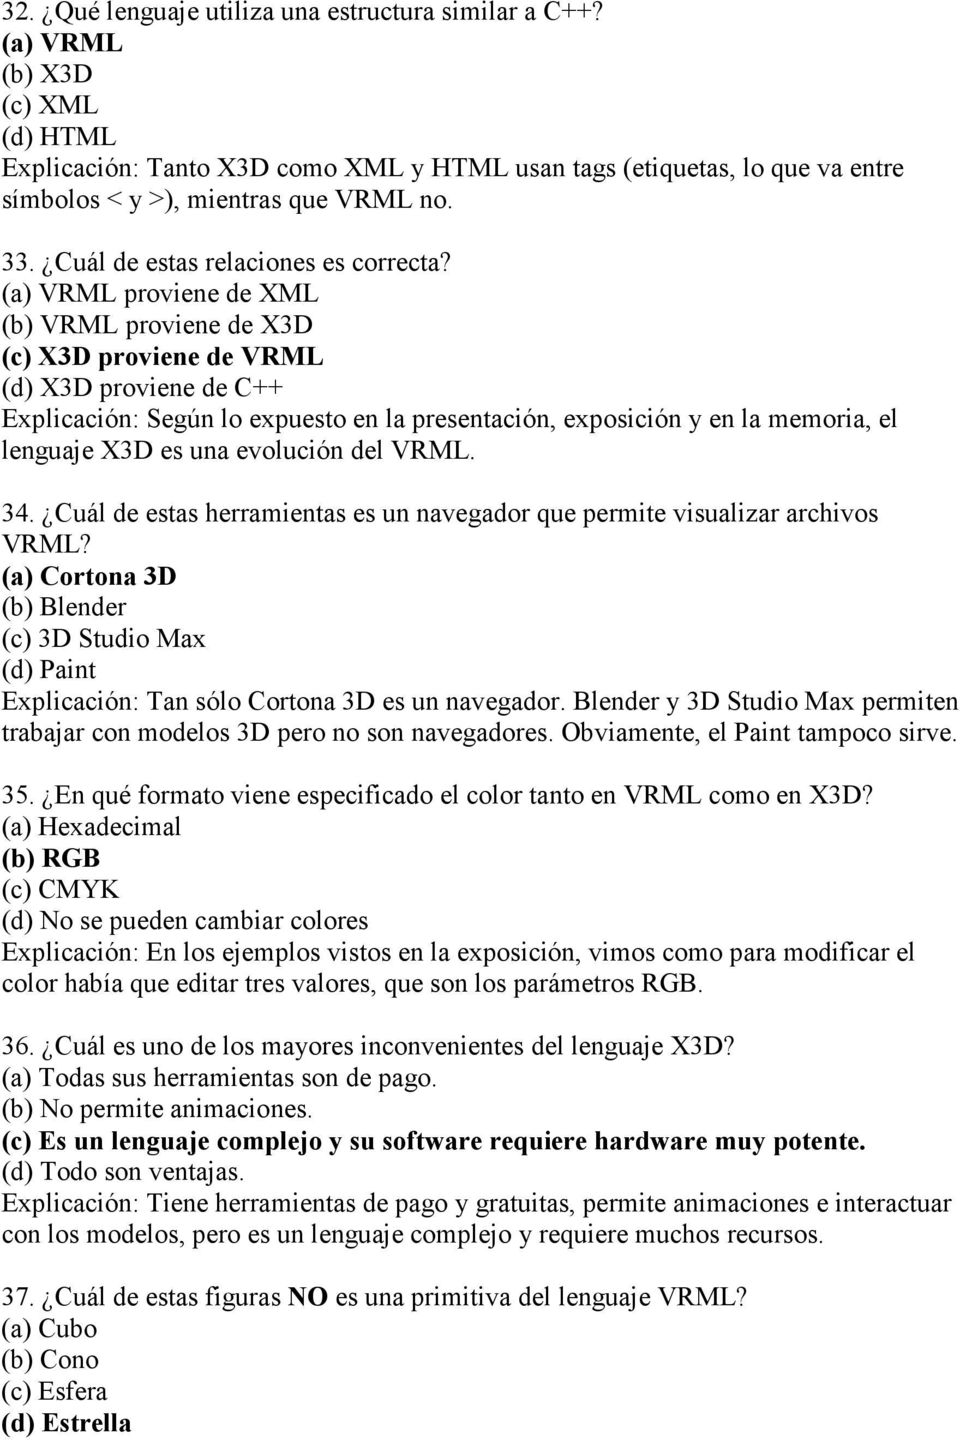 (a) VRML proviene de XML (b) VRML proviene de X3D (c) X3D proviene de VRML (d) X3D proviene de C++ Explicación: Según lo expuesto en la presentación, exposición y en la memoria, el lenguaje X3D es